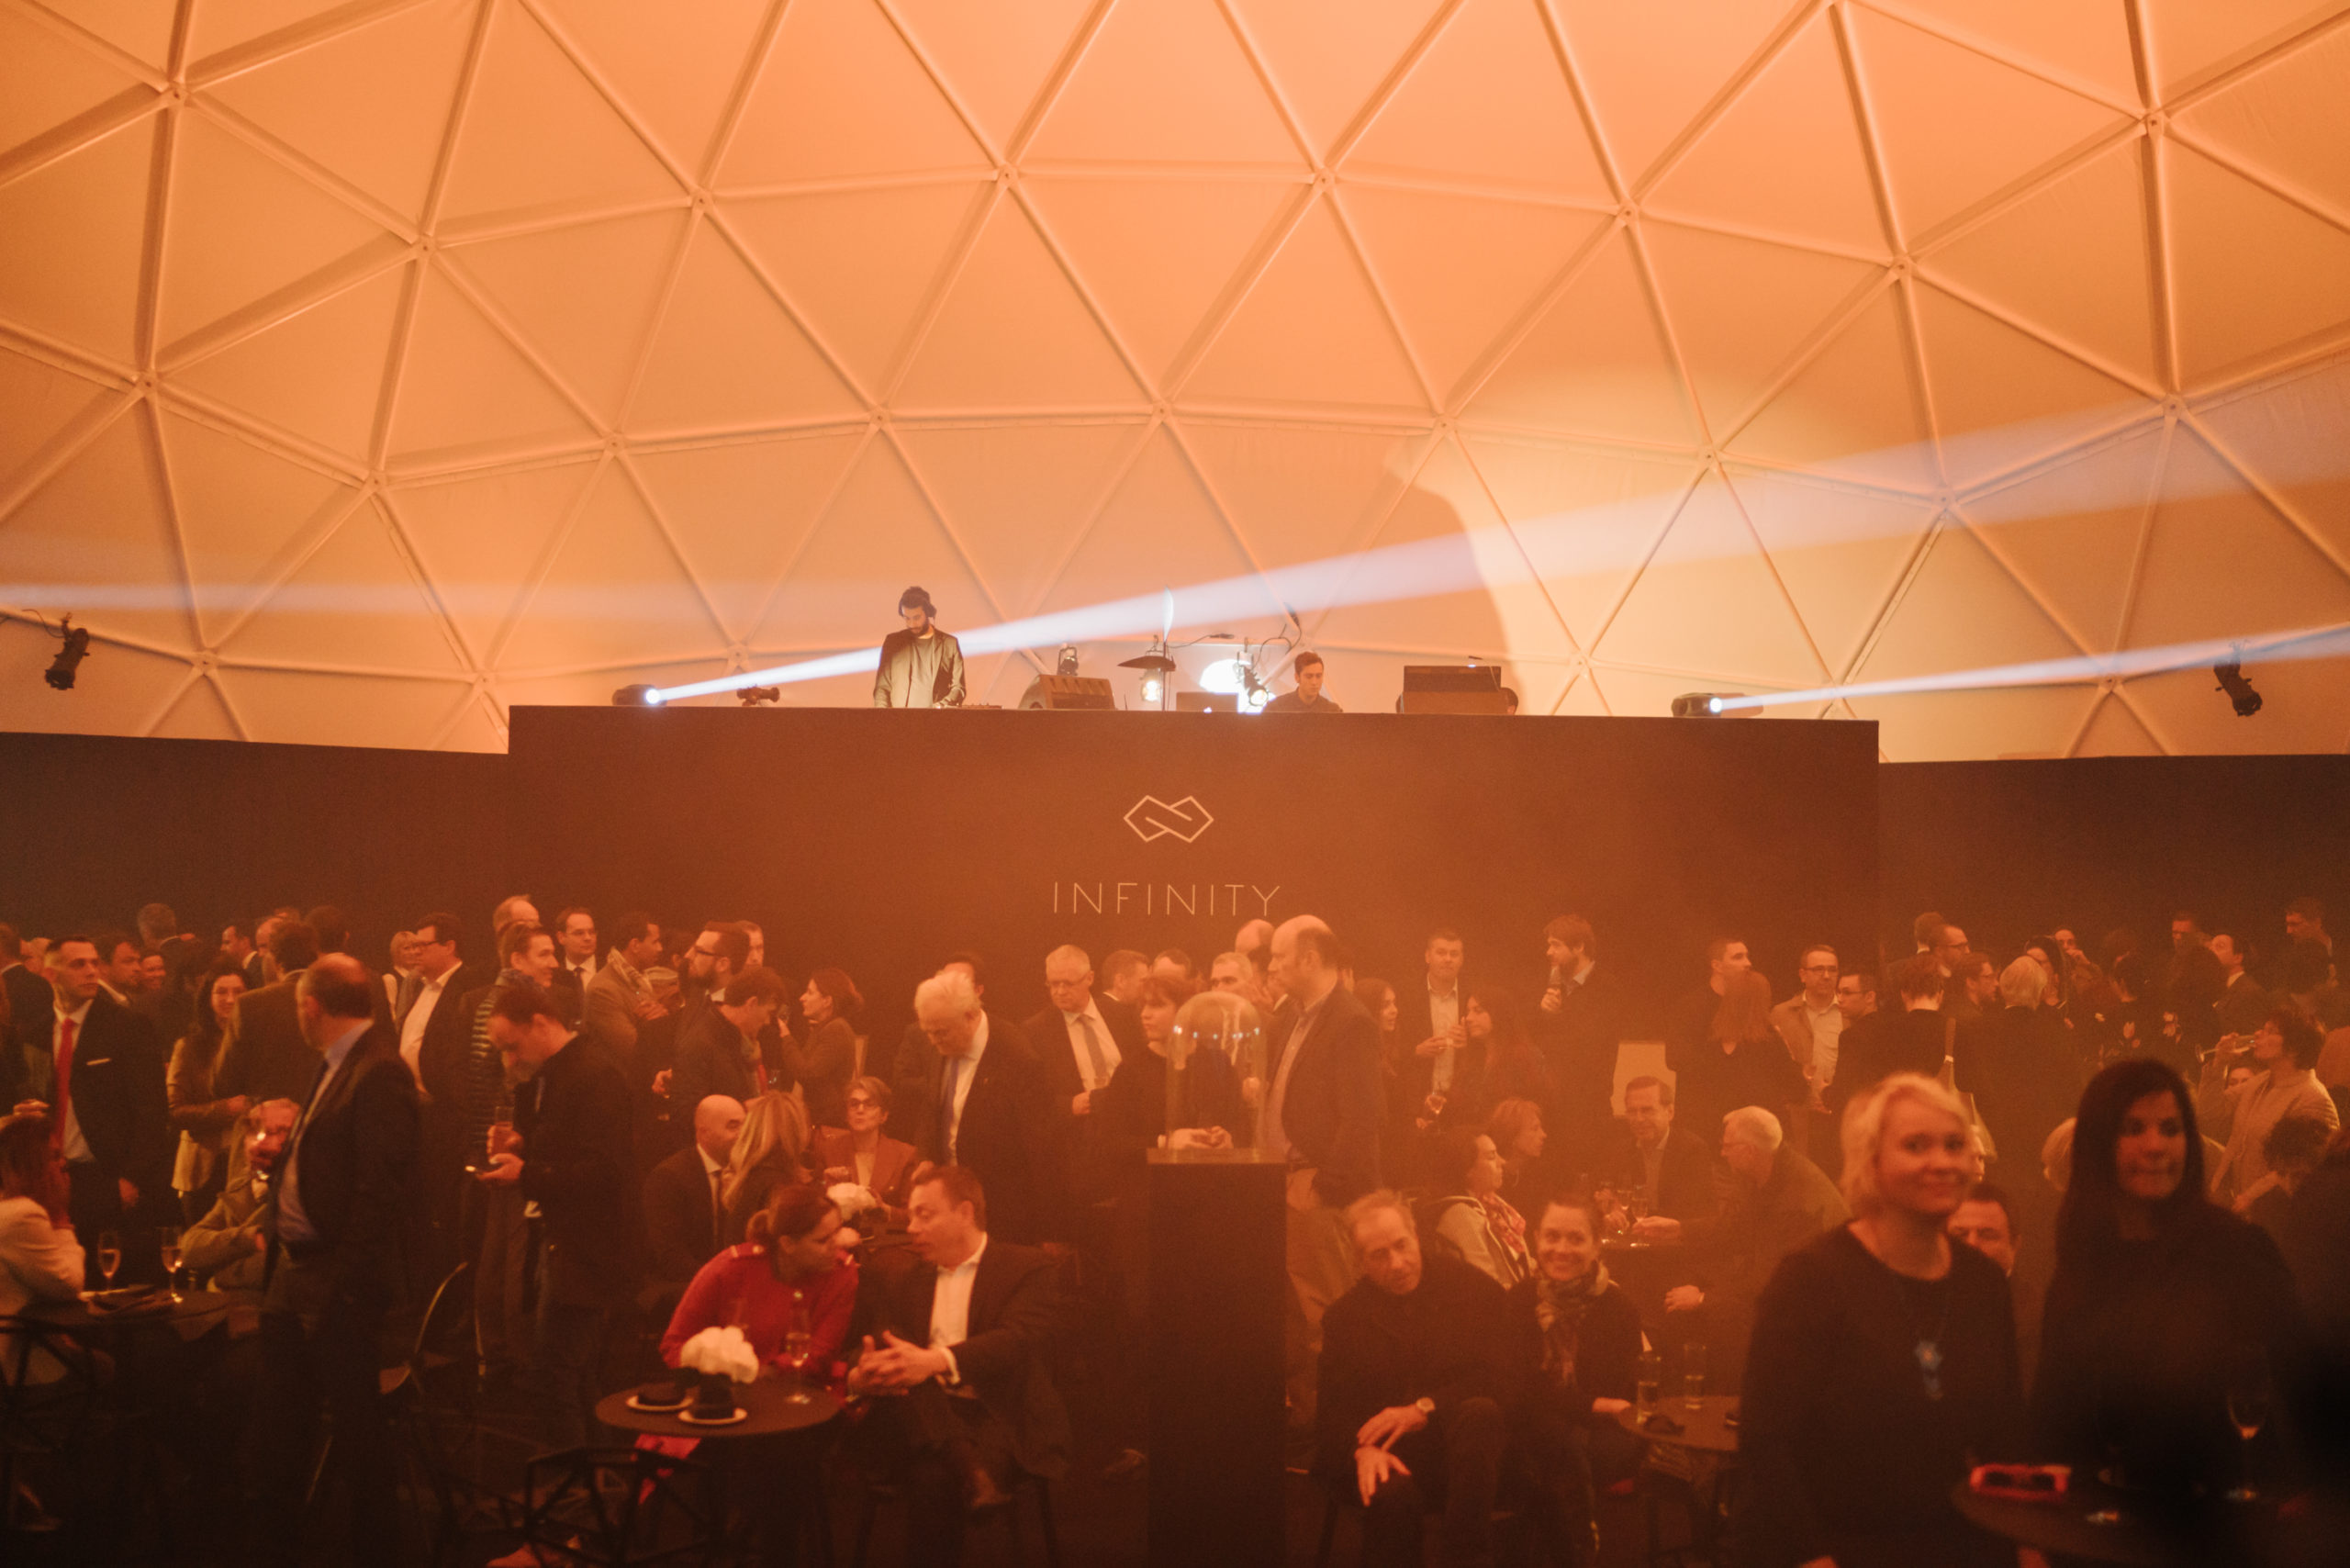 Shine a light agence évènementielle luxembourg - créateur d'expériences immersives - Pose de la première pierre infinity immobel